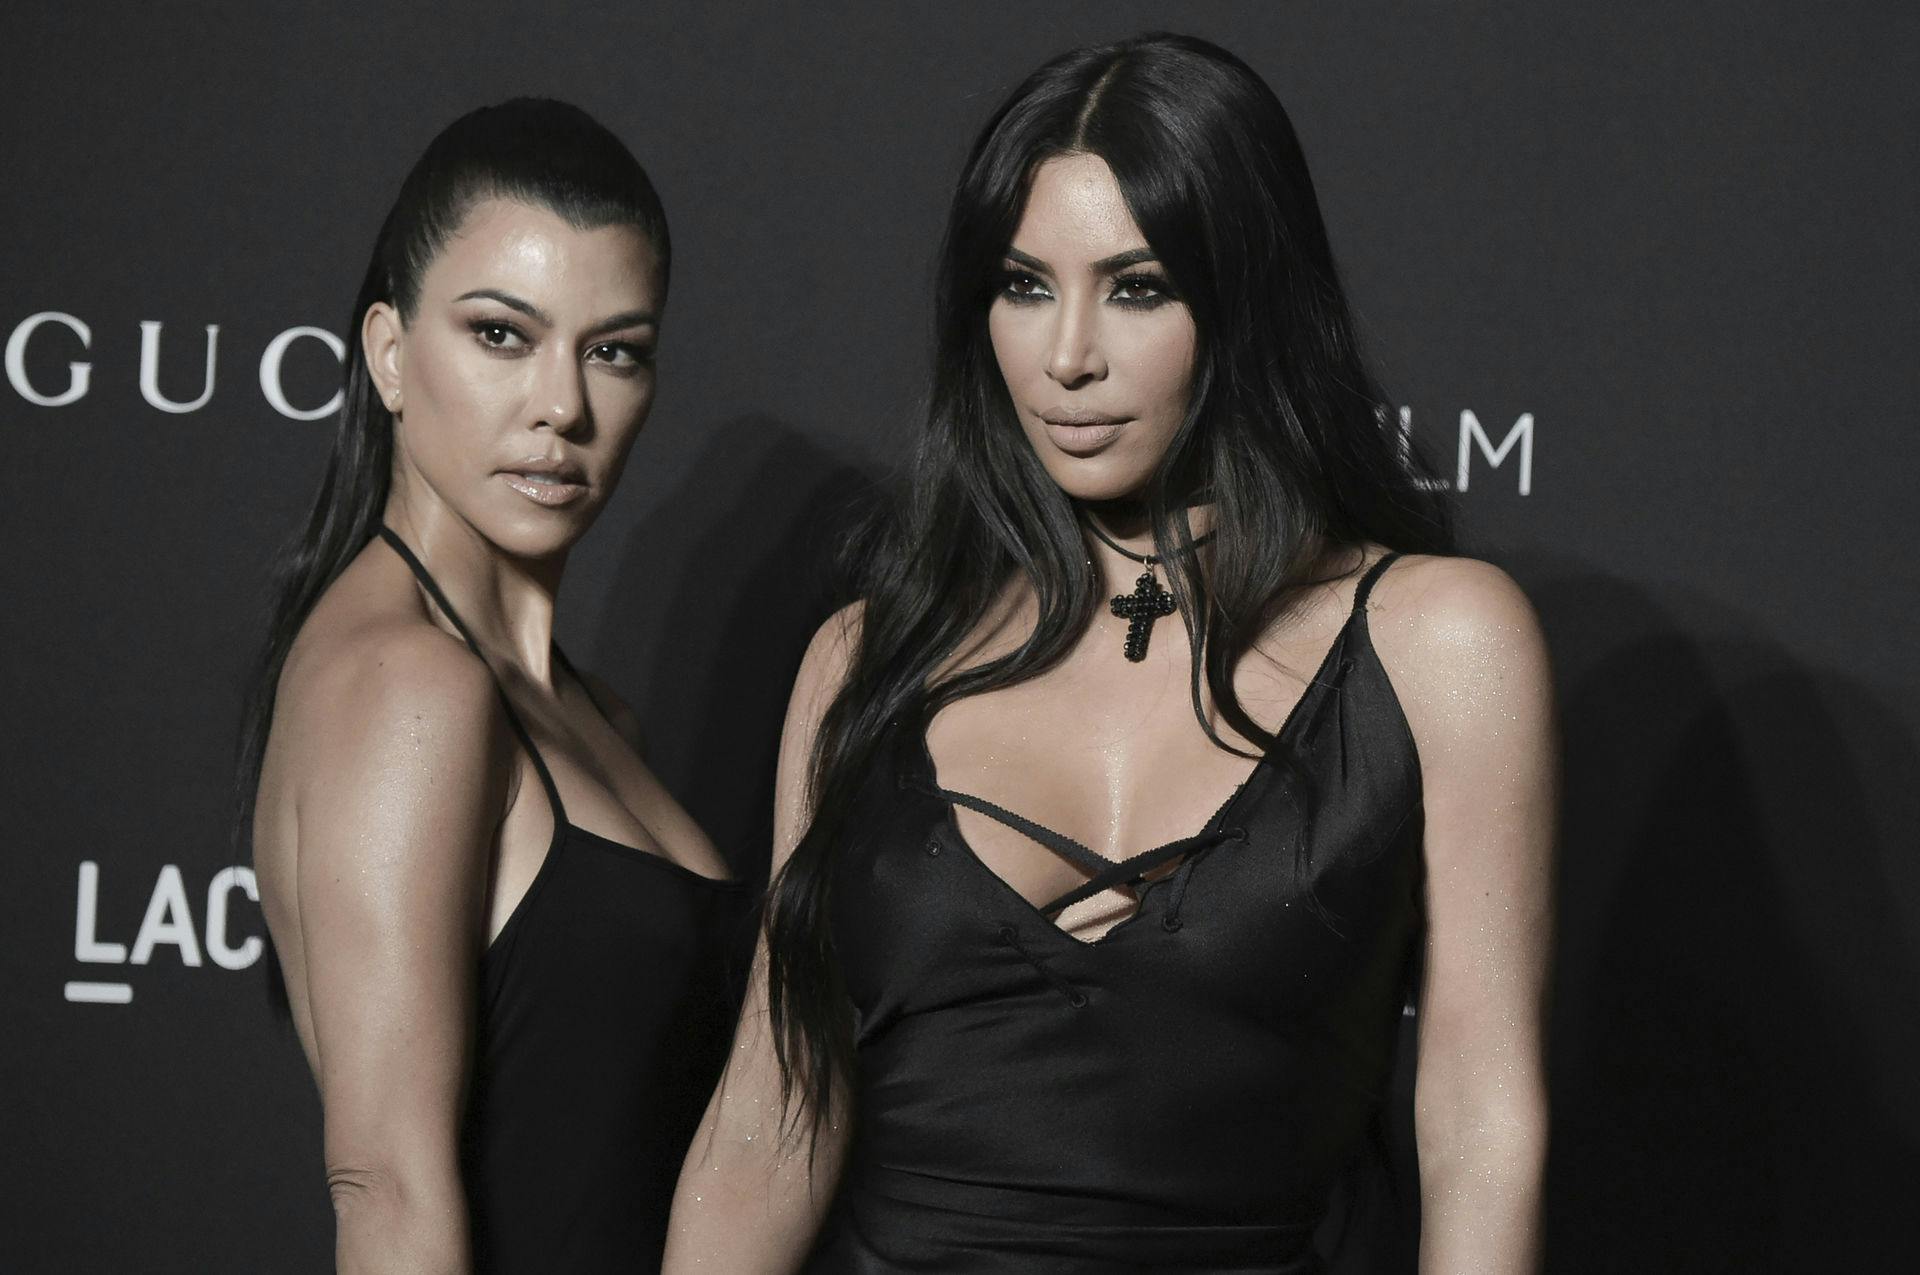 Stemningen mellem Kim (th.) og Kourtney Kardashian er ikke god i den nye trailer til "The Kardashians" sæson tre, som har premiere 25. maj på Disney+.
